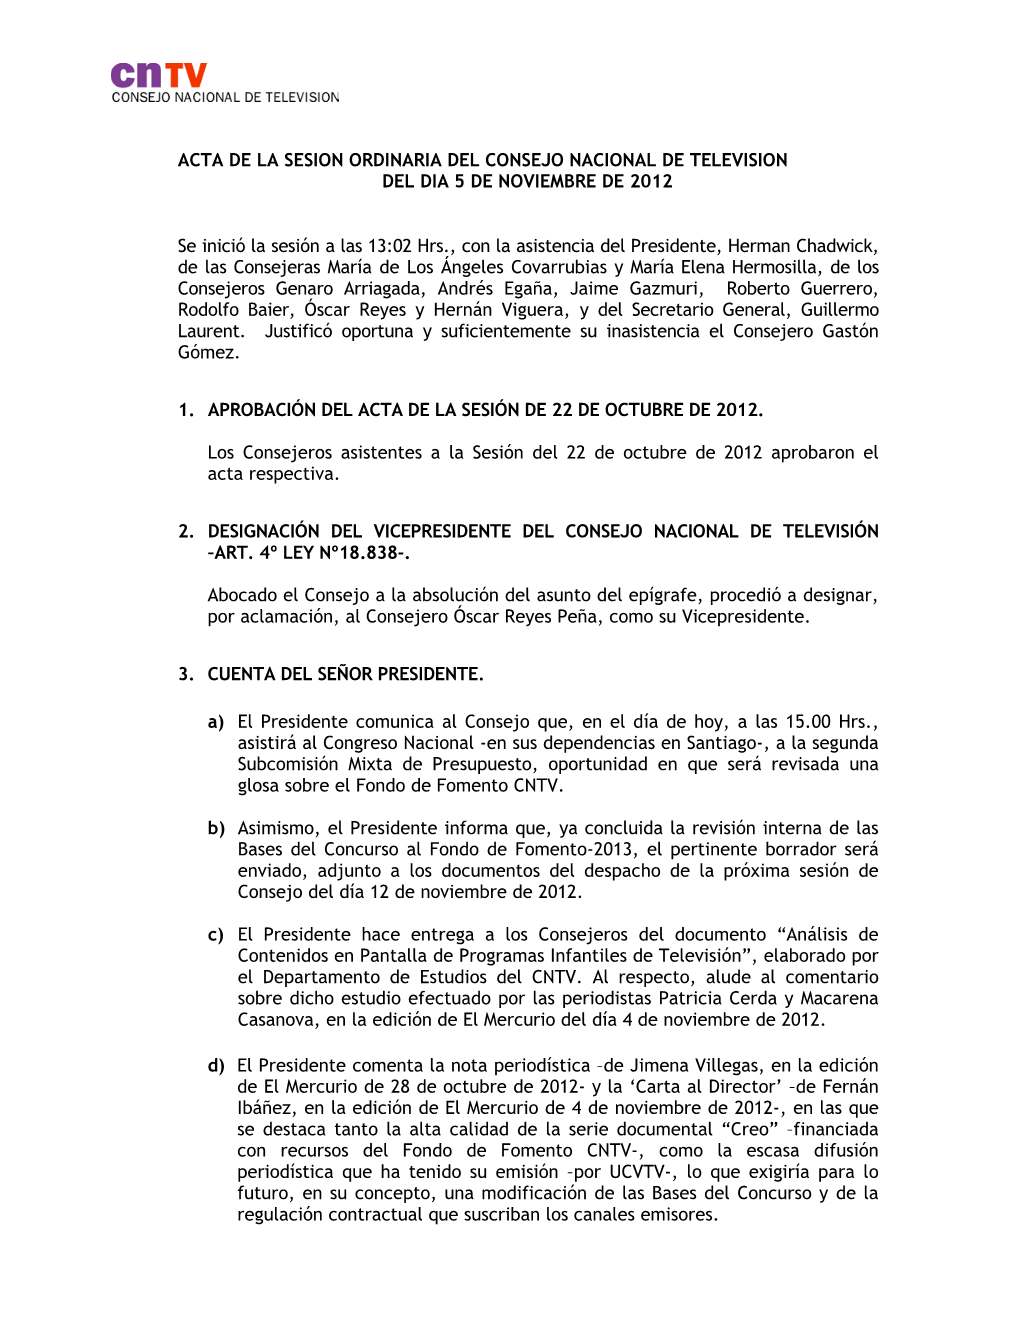 Acta De La Sesion Ordinaria Del Consejo Nacional De Television Del Dia 5 De Noviembre De 2012